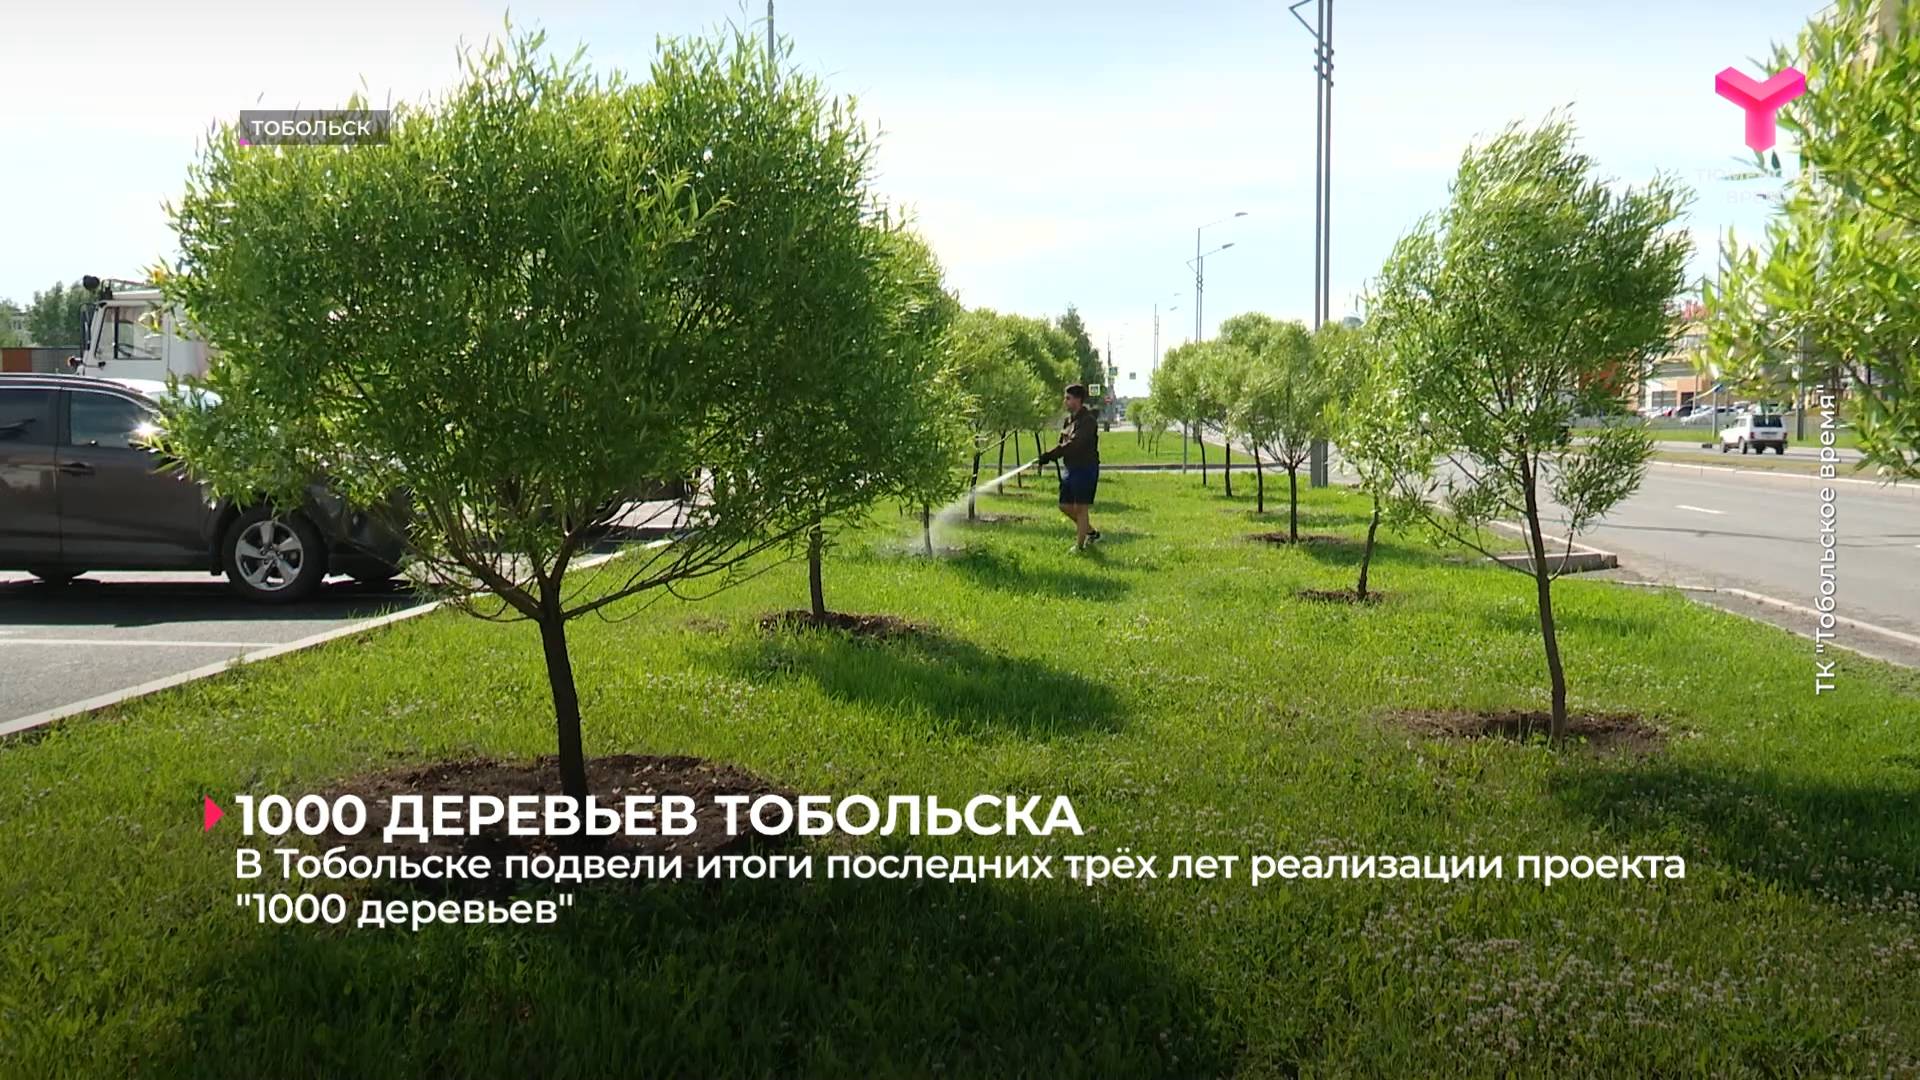 В Тобольске подвели итоги последних трёх лет реализации проекта "1000 деревьев"